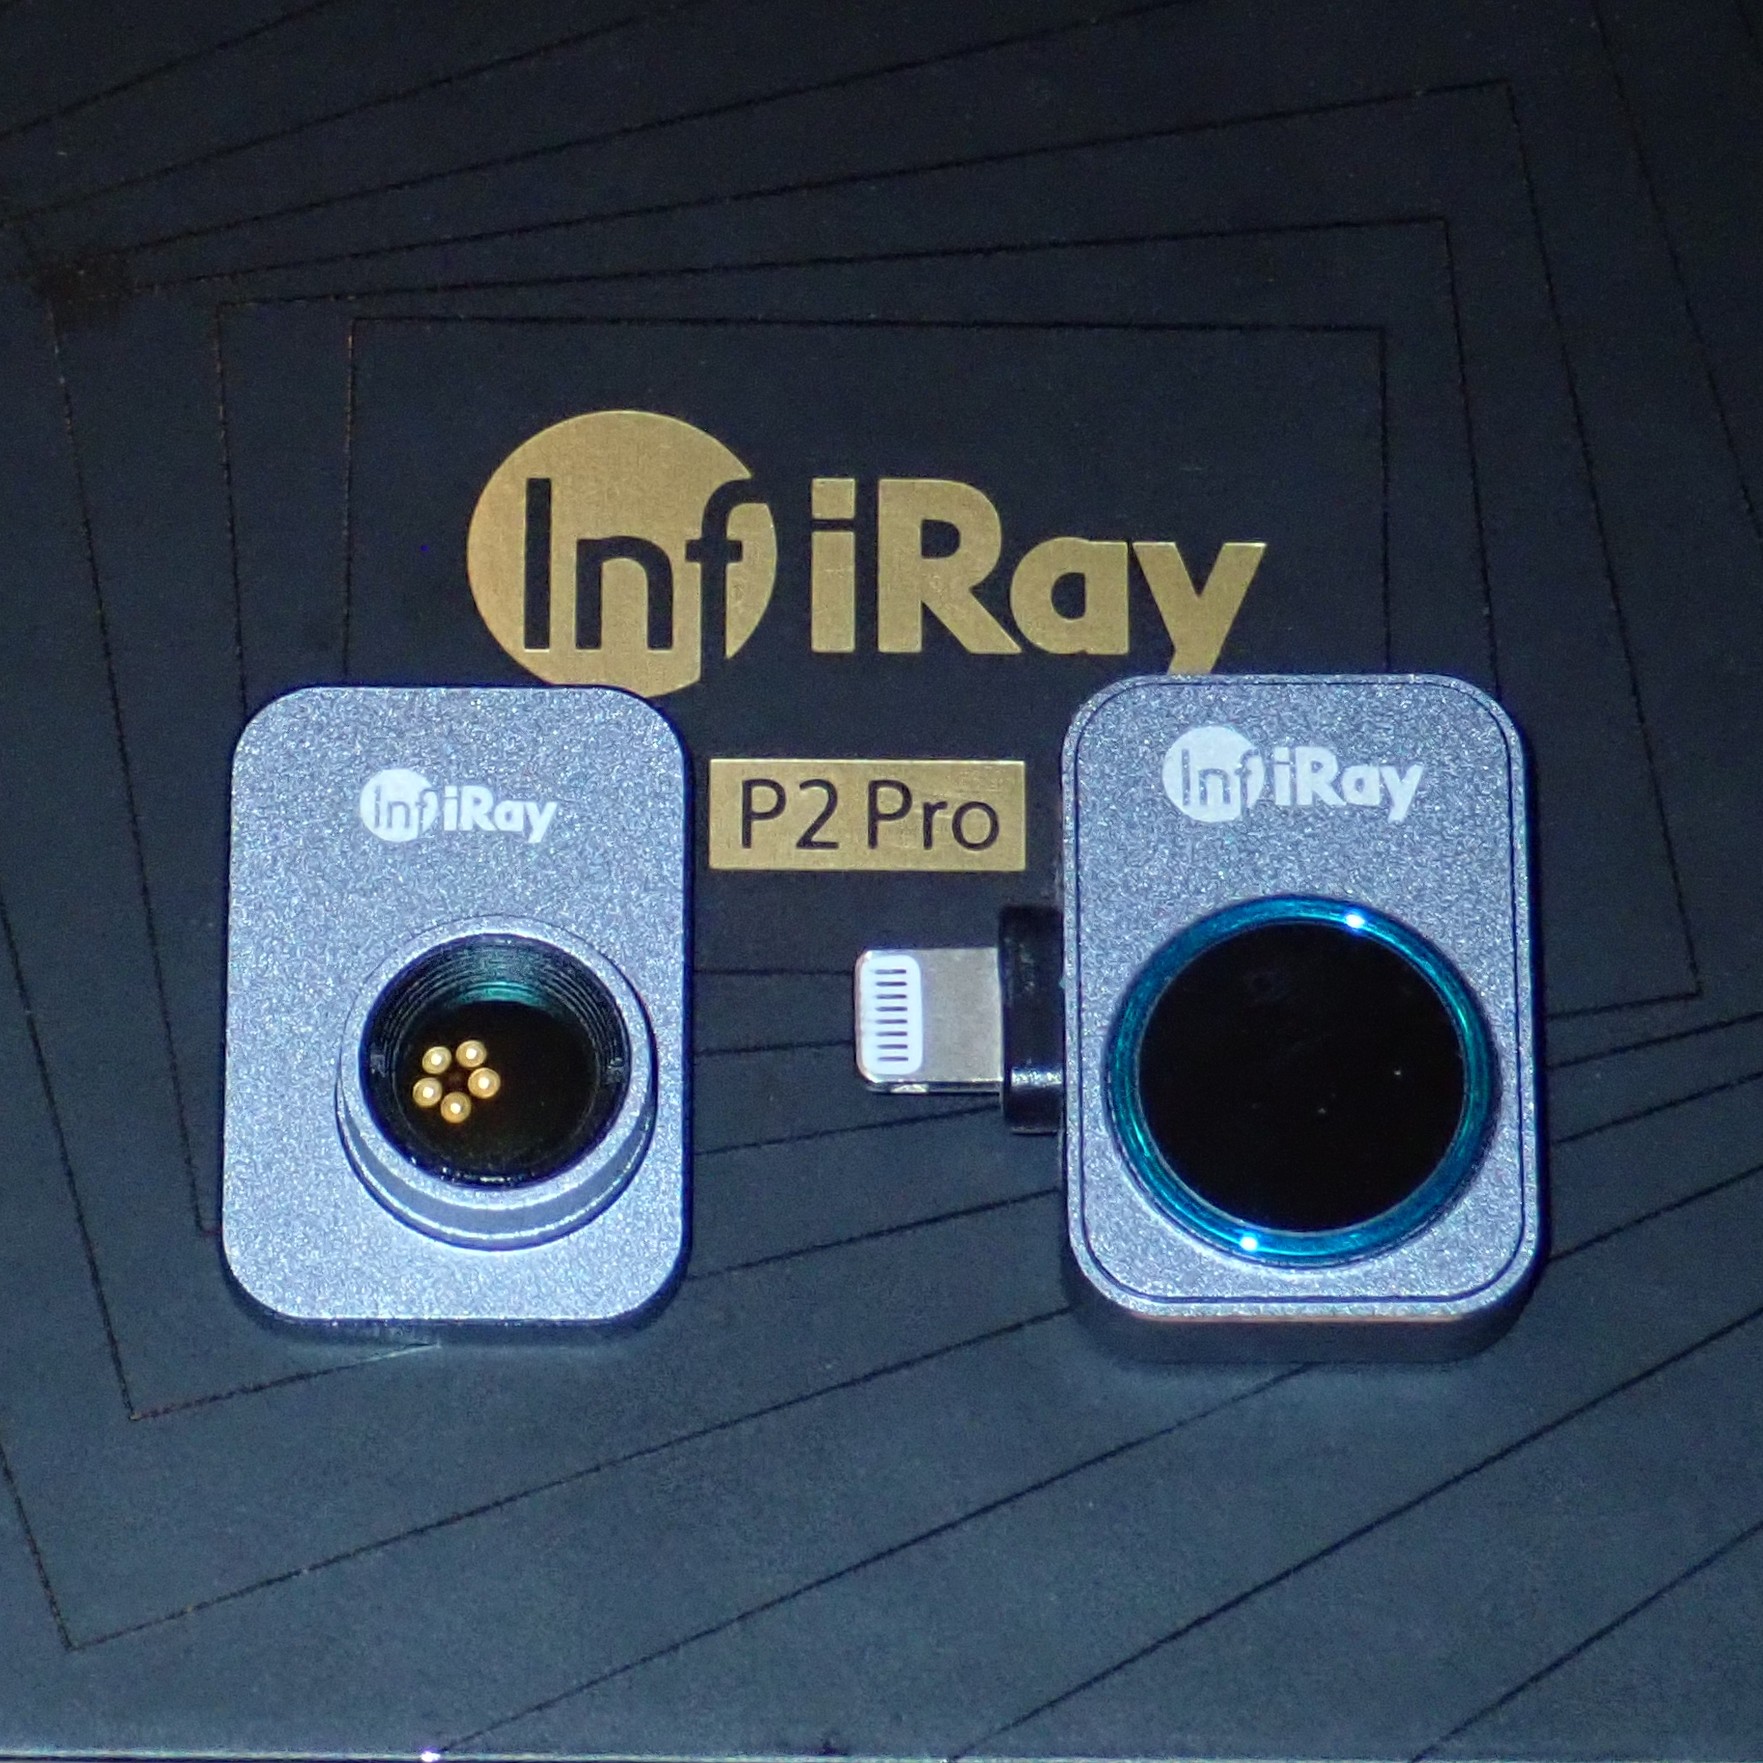 InfiRay P2 Pro Thermal Camera Review 